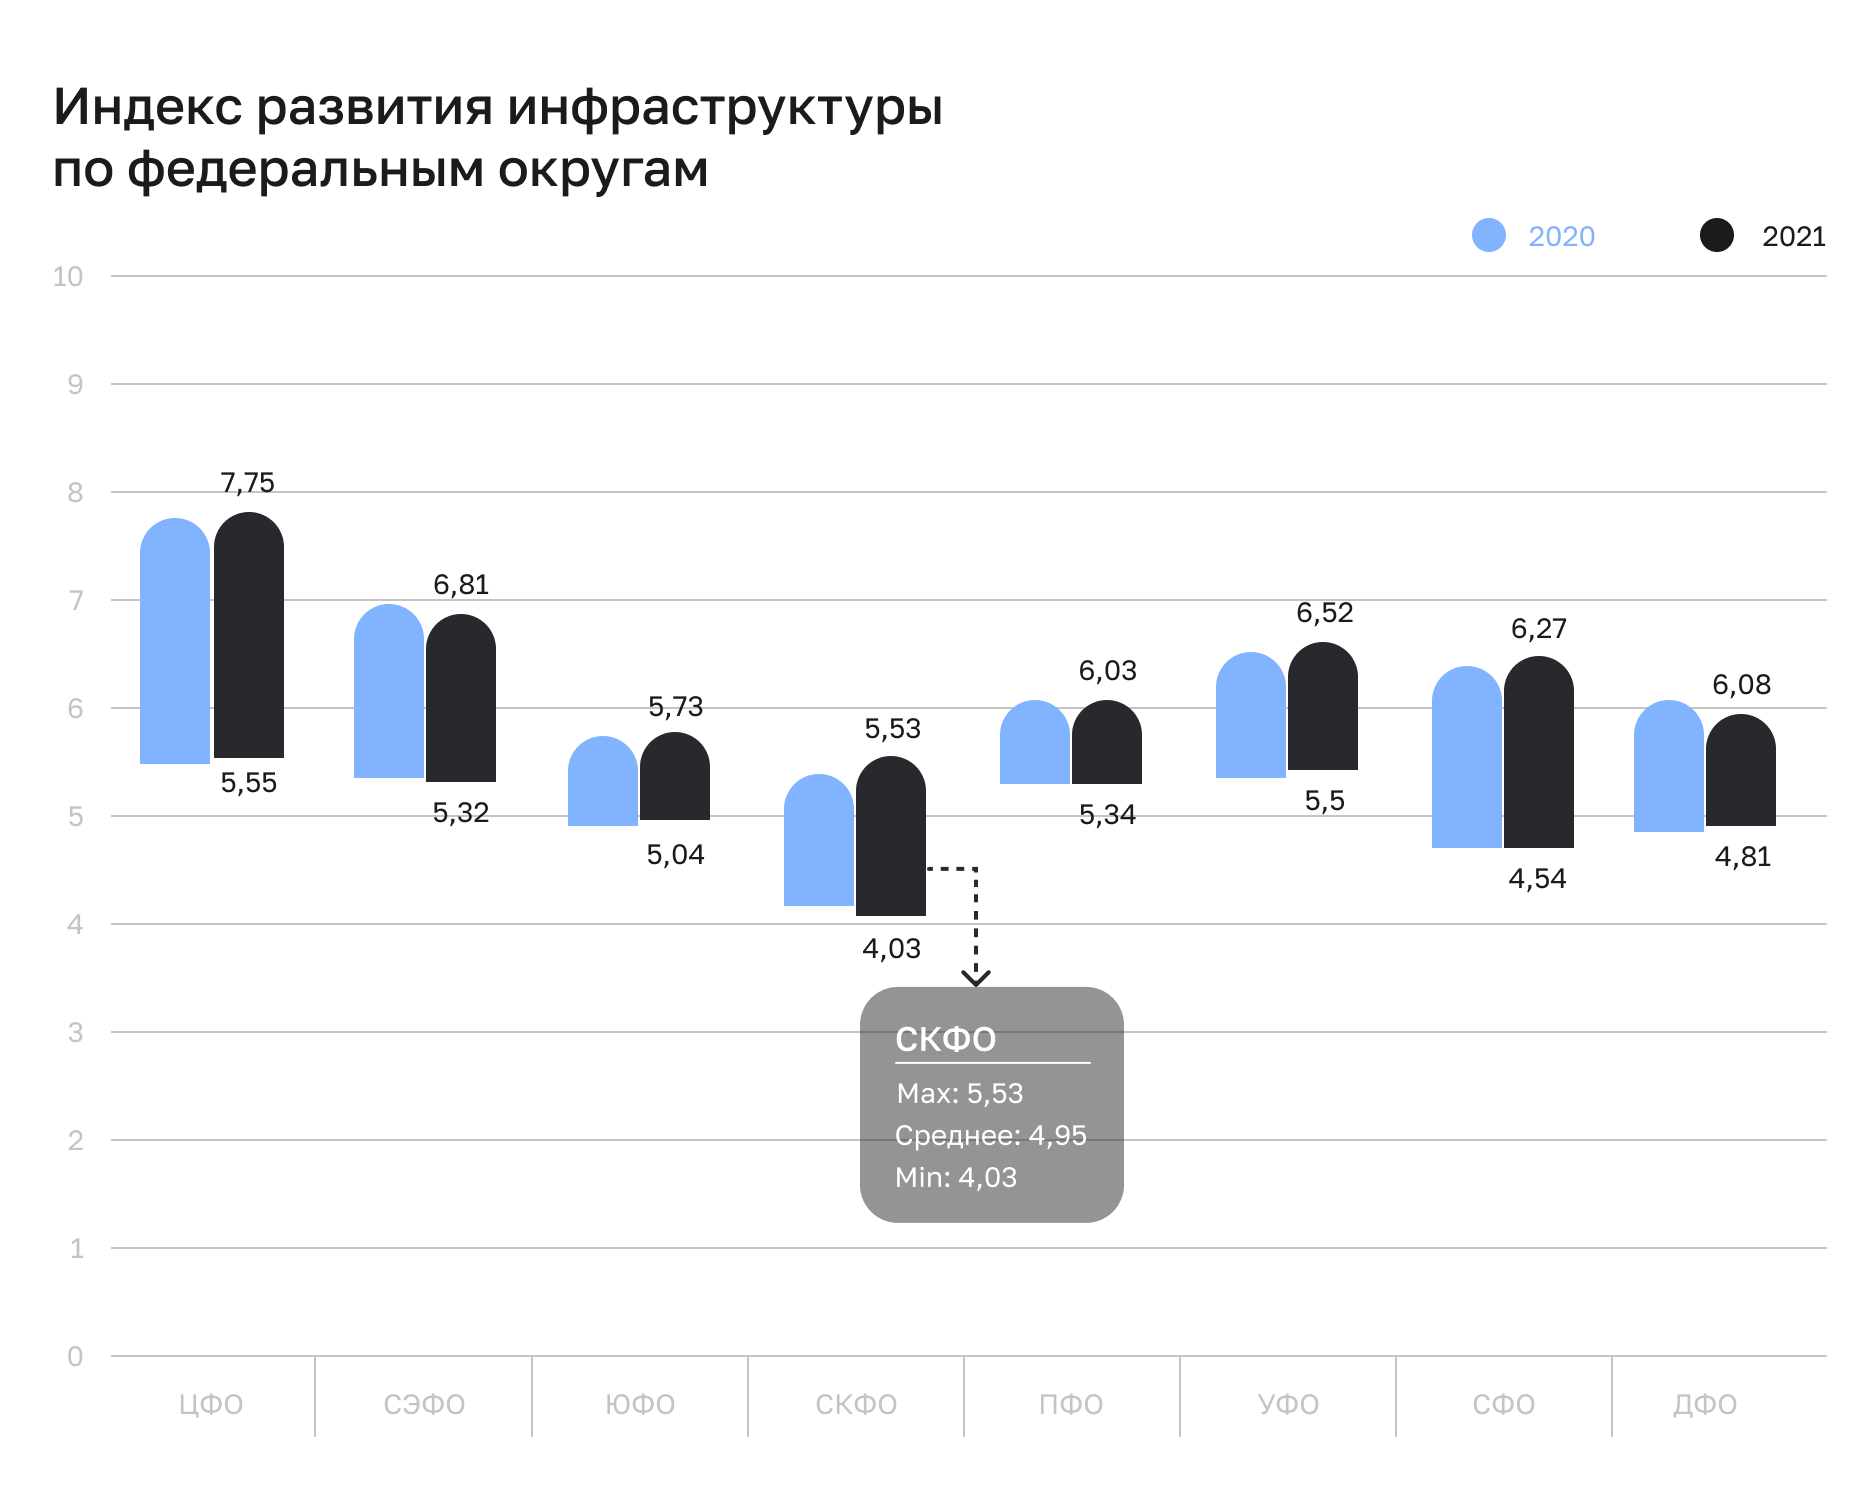 В СКФО индекс развития инфраструктуры ниже среднероссийского уровня (5,62)